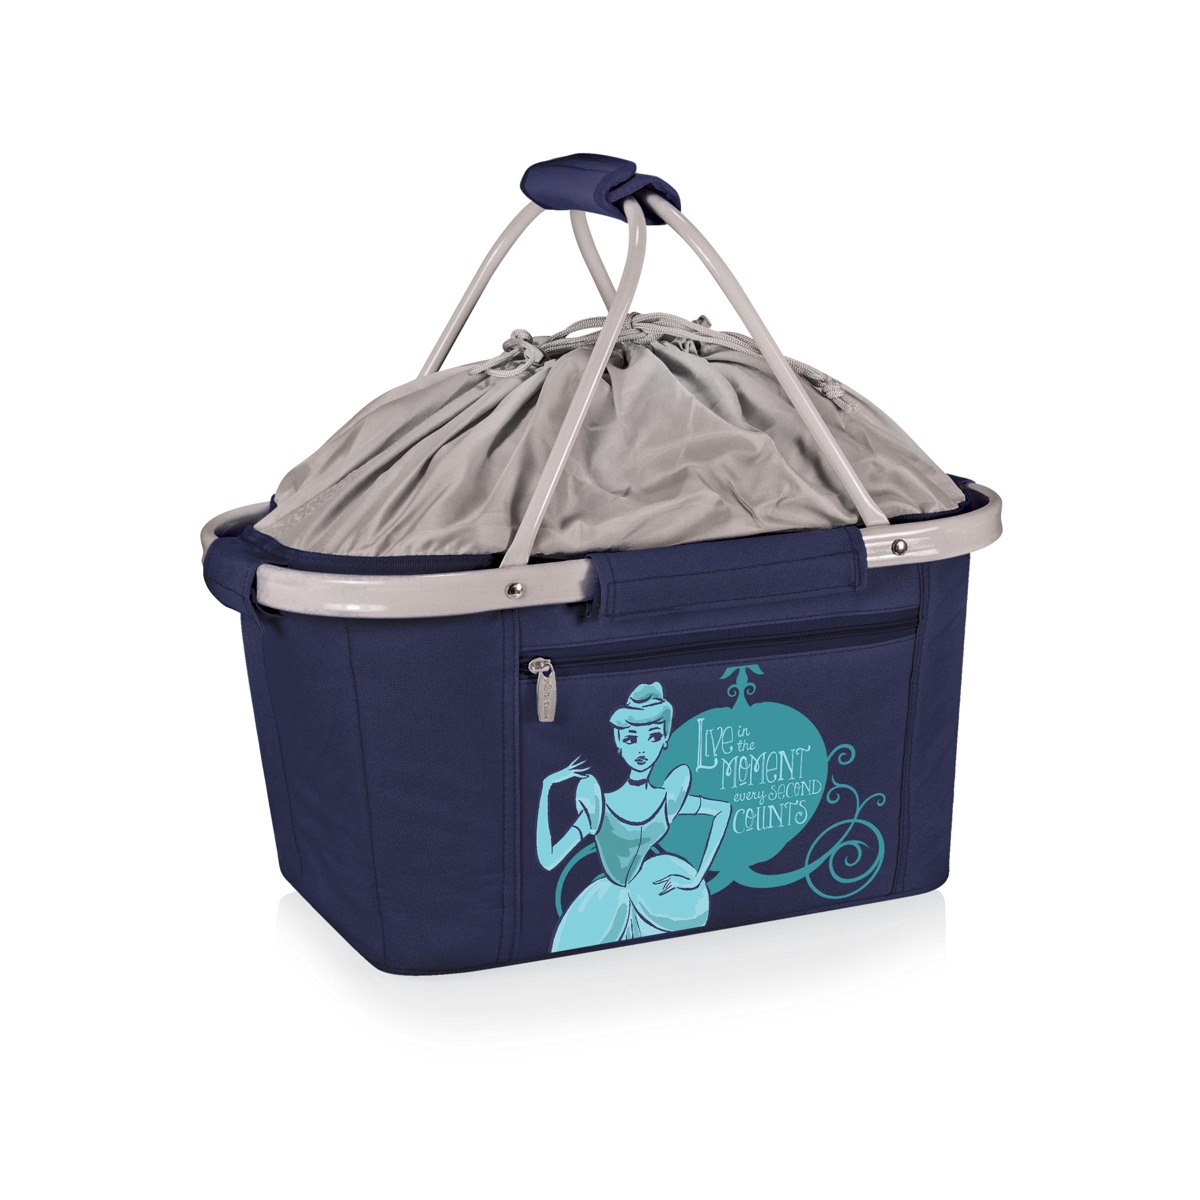 Disney's Cinderella Metro Basket Collapsible Cooler Tote - Navy